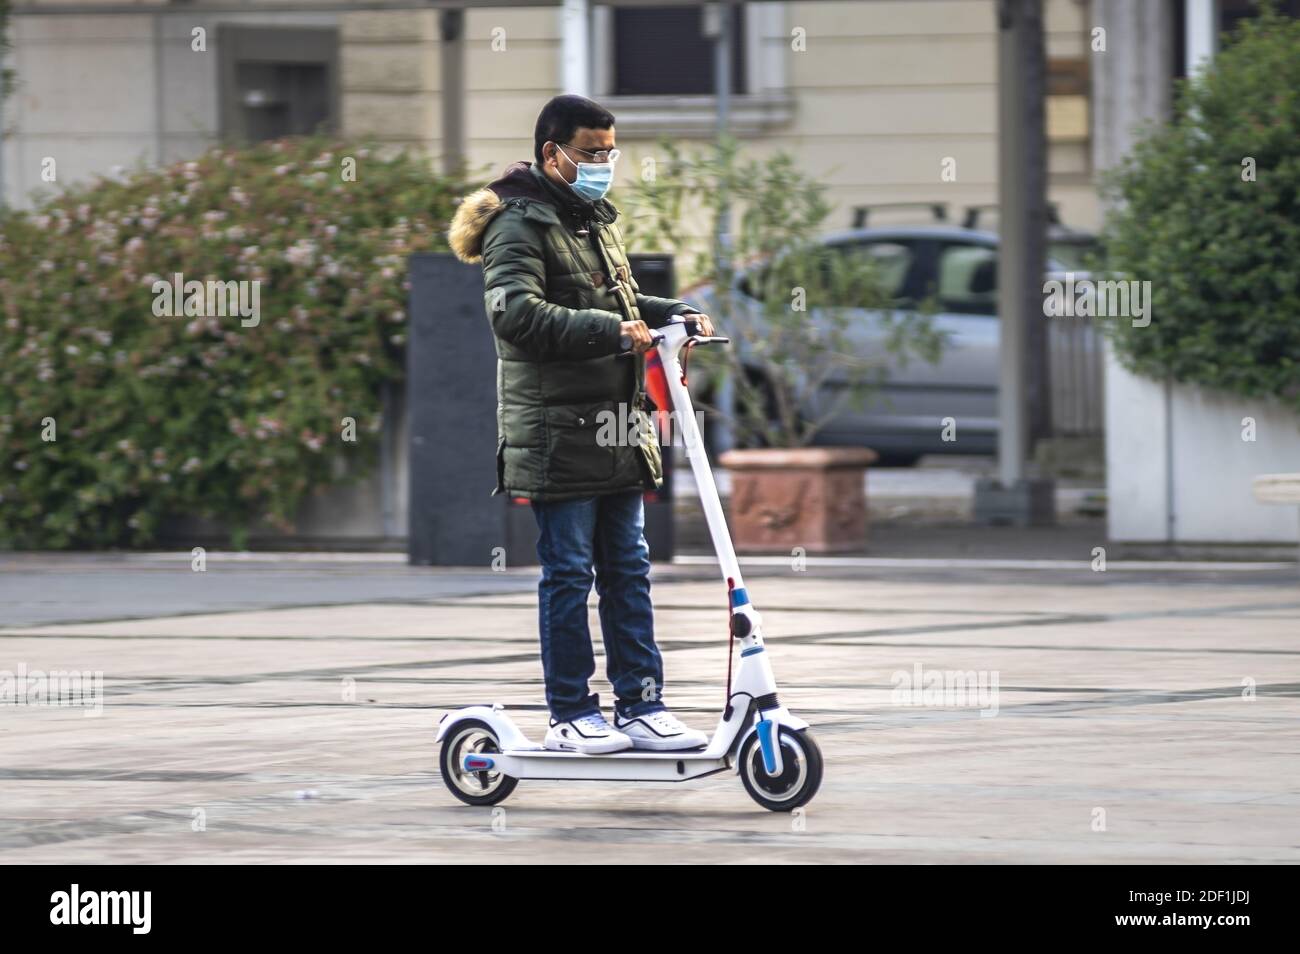 terni,italy november 24 2020:man with mono skate inside the city Stock Photo